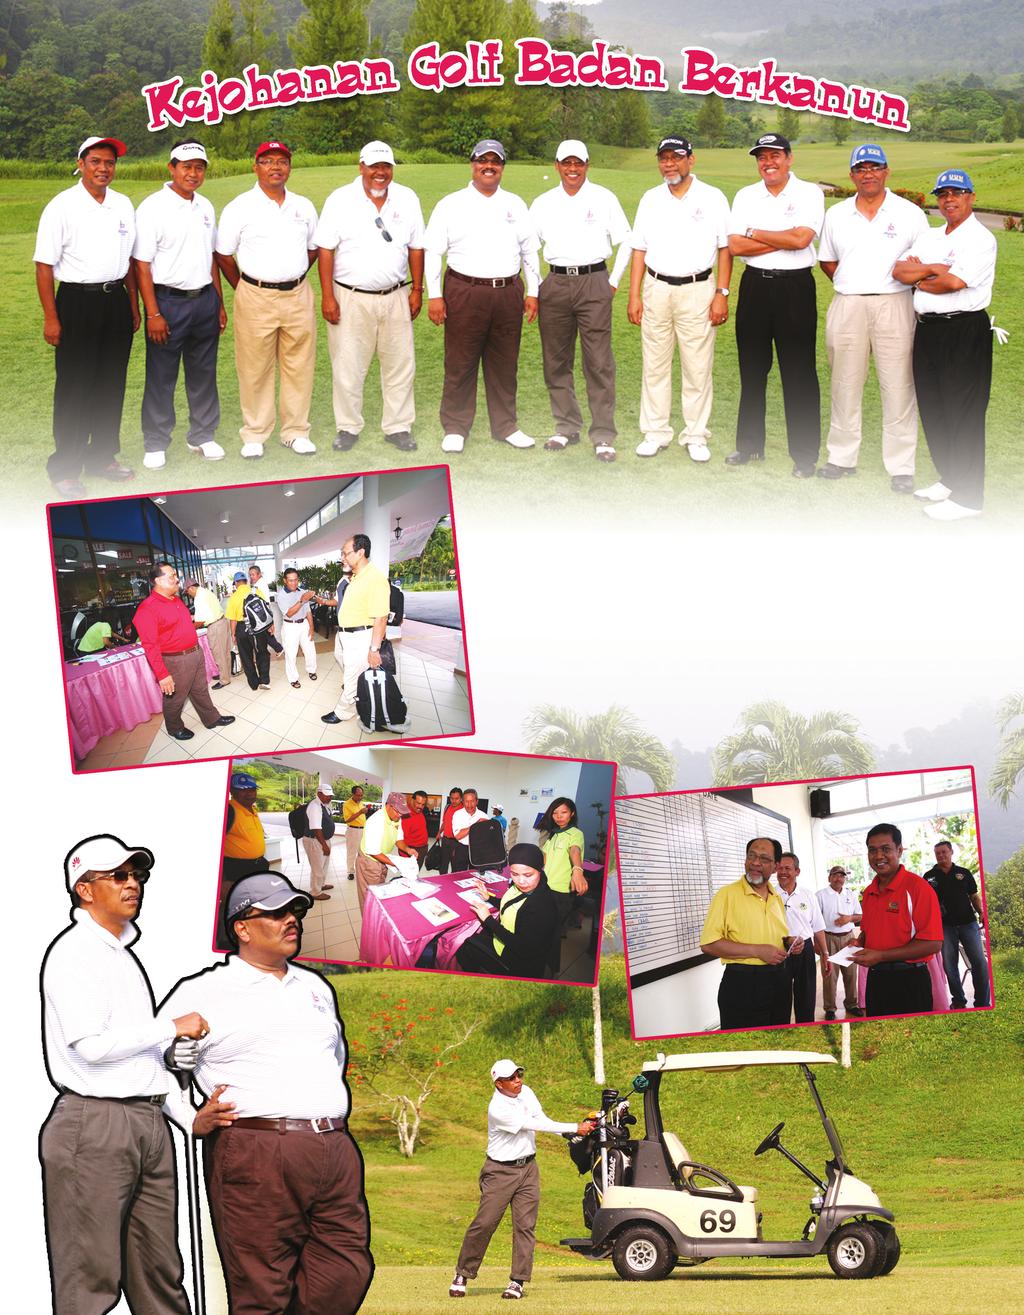 PERSATUAN BADAN BERKANUN MALAYSIA Bersempena dengan Mesyuarat Agung Tahunan ke 29, pihak Jawatankuasa Kecil Sukan, Kebajikan dan Kesenian telah menganjurkan satu Pertandingan Golf berpasukan pada